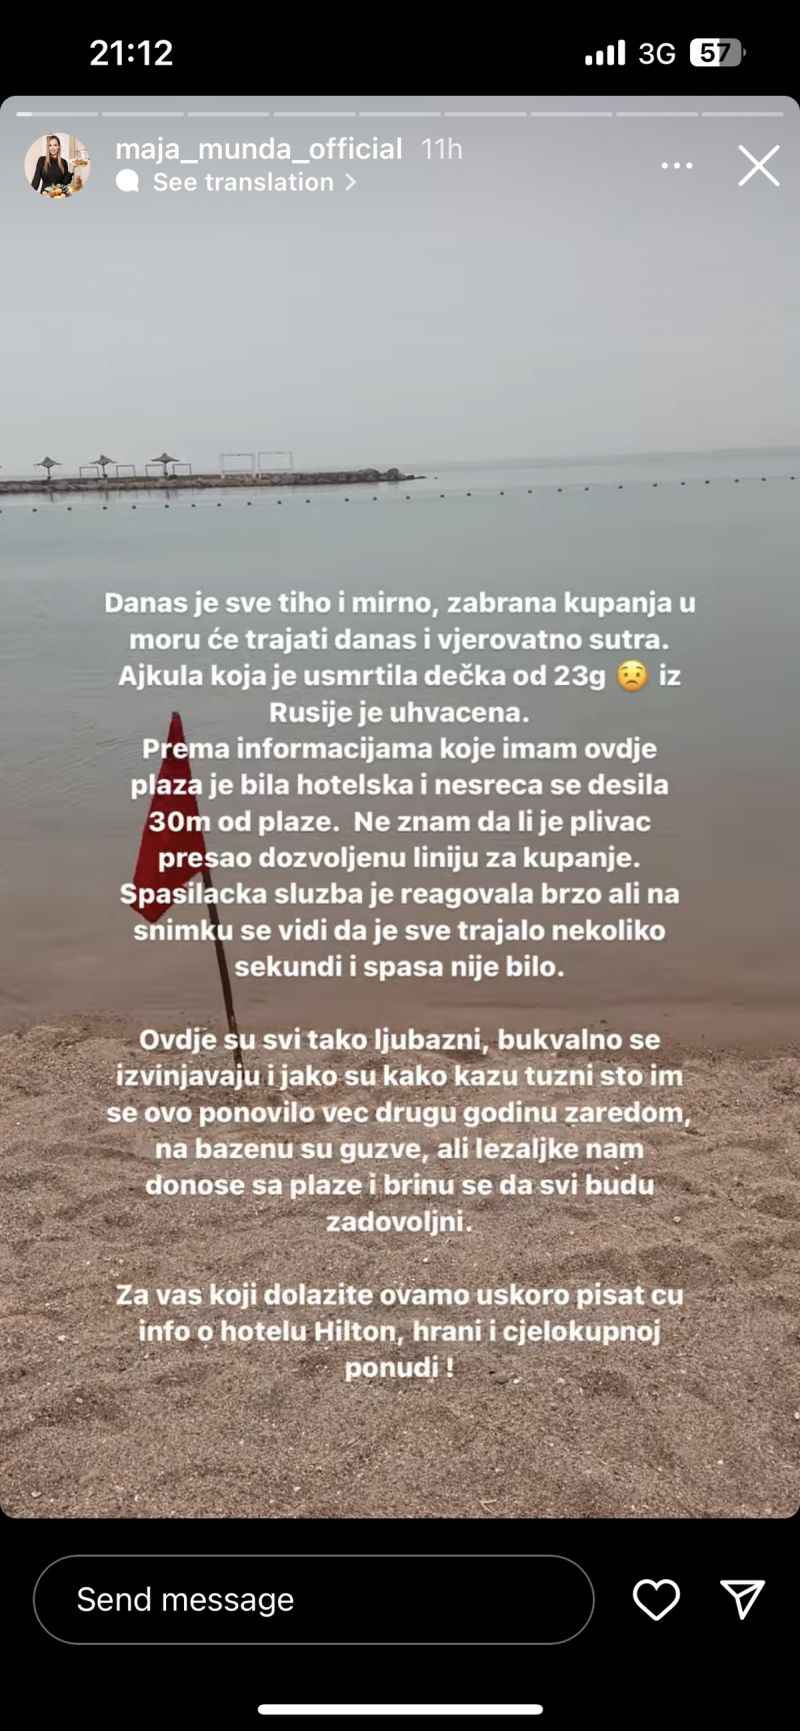 Instagram Story koji je objavila Maja Munda